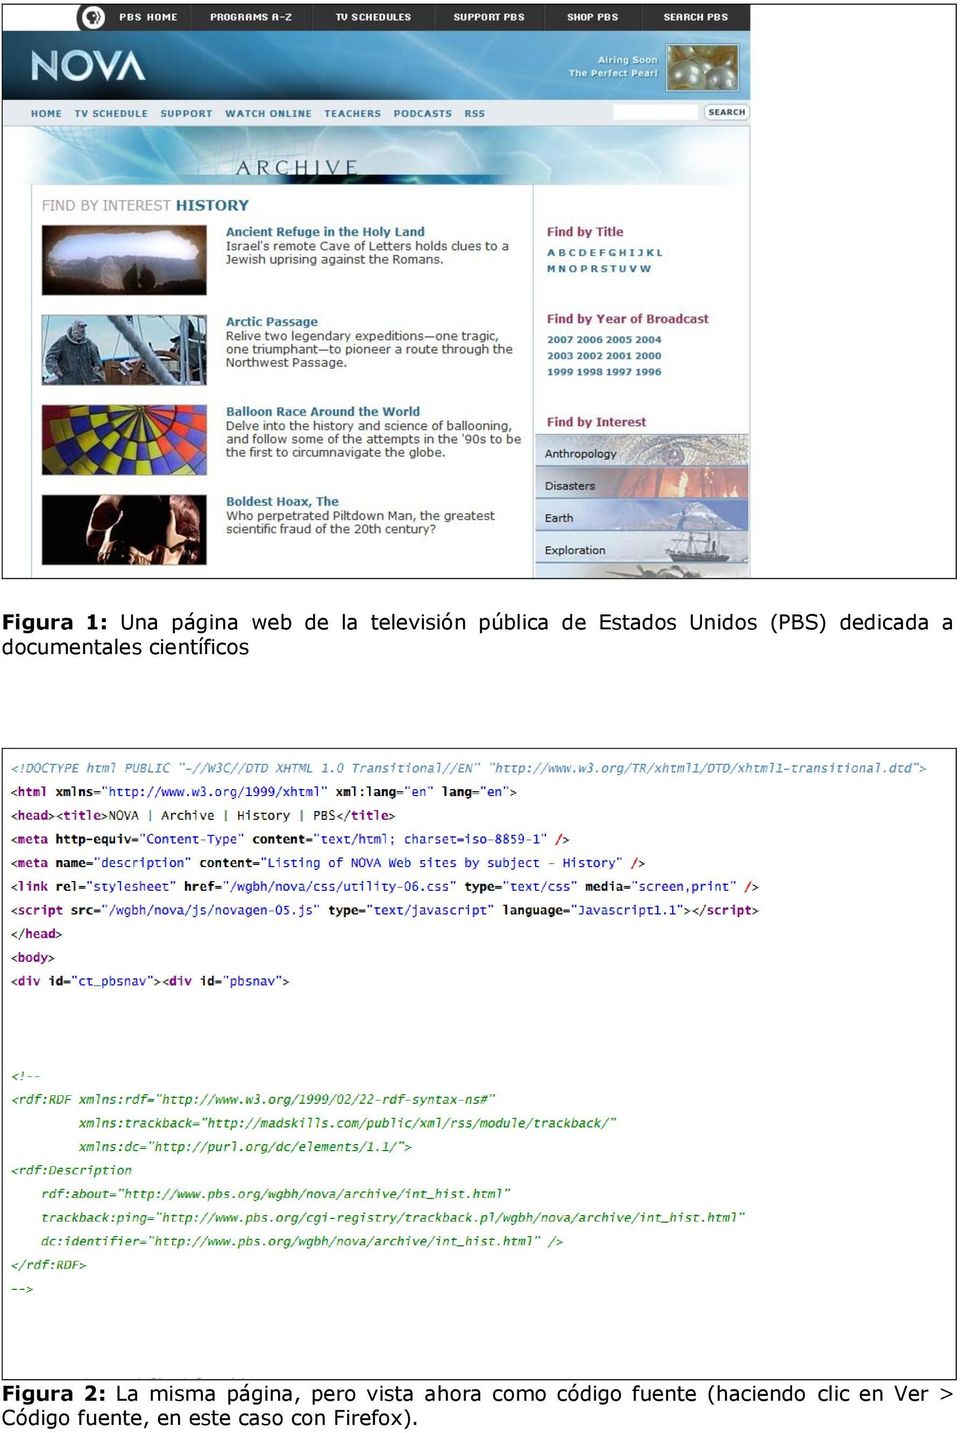 Figura 2: La misma página, pero vista ahora como código